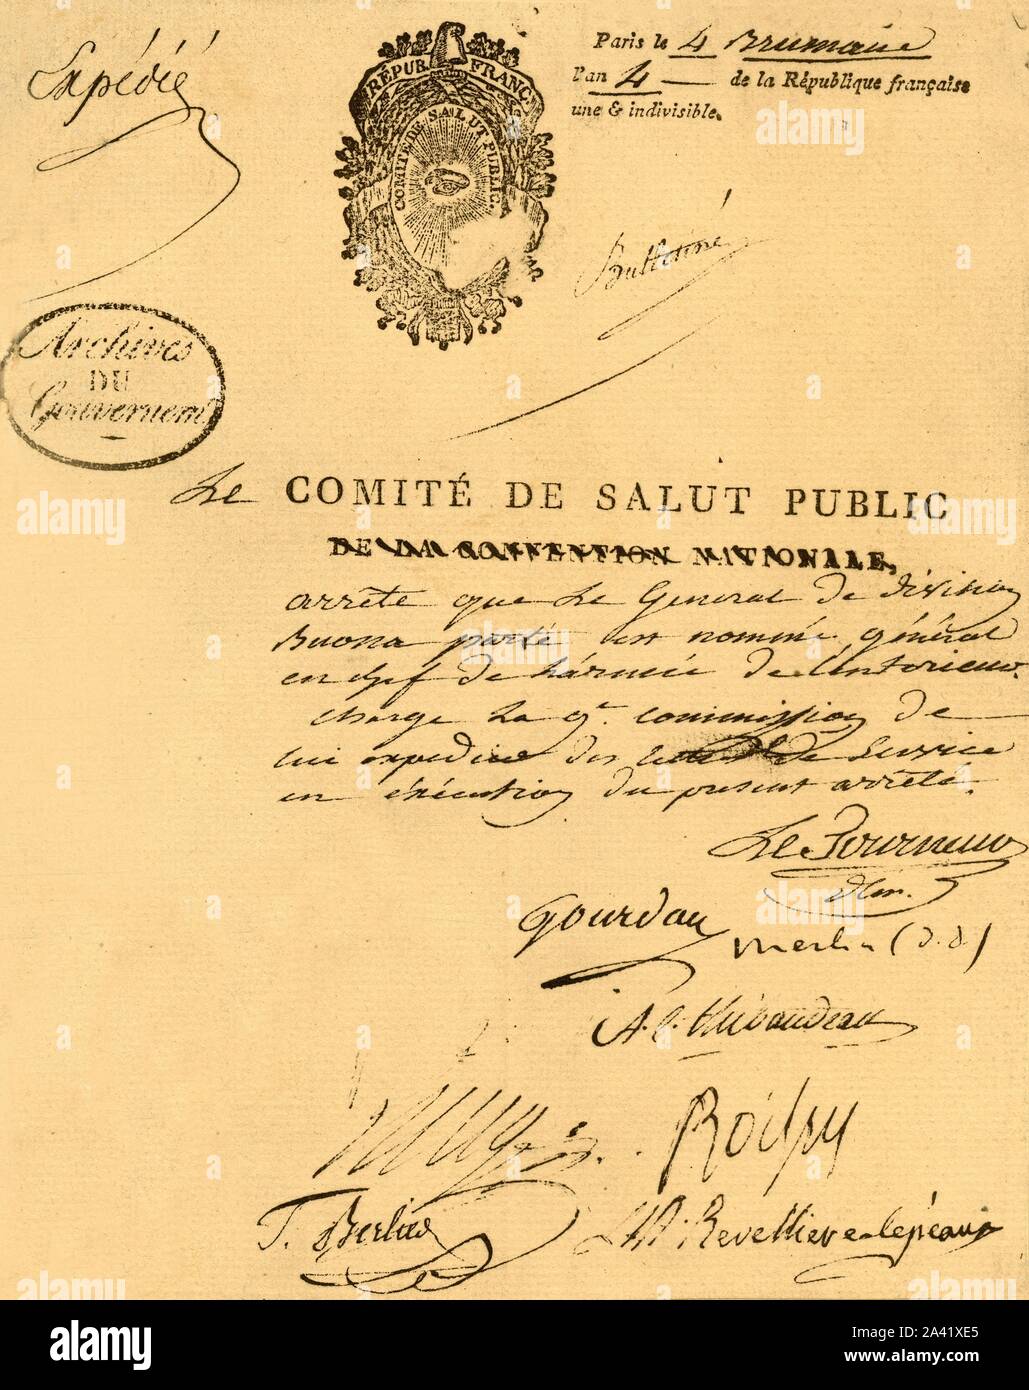 Decree of the Committee of Public Health, 26 October 1795, (1921). 'Arr&#xea;t&#xe9; du Comit&#xe9; de Salut public, 4 brumaire an IV. Nomination de Bonaparte au commandement en chef de l'arm&#xe9;e de l'Int&#xe9;rieur. (La Convention nationale est dissoute de la veille.) Minute de main de Le Tourneur, sign&#xe9;e de [signed by] lui et de Gourdan, Merlin (de Douai), Thibaudeau, Lesage (d'Eure-et-Loir), Boissy, Berlier et La Revelli&#xe8;re-L&#xe9;peaux.' Napoleon Bonaparte (1769-1821) is nominated as head of the Army of the Interior (French Revolutionary Army). Facsimile document from &quot;Na Stock Photo